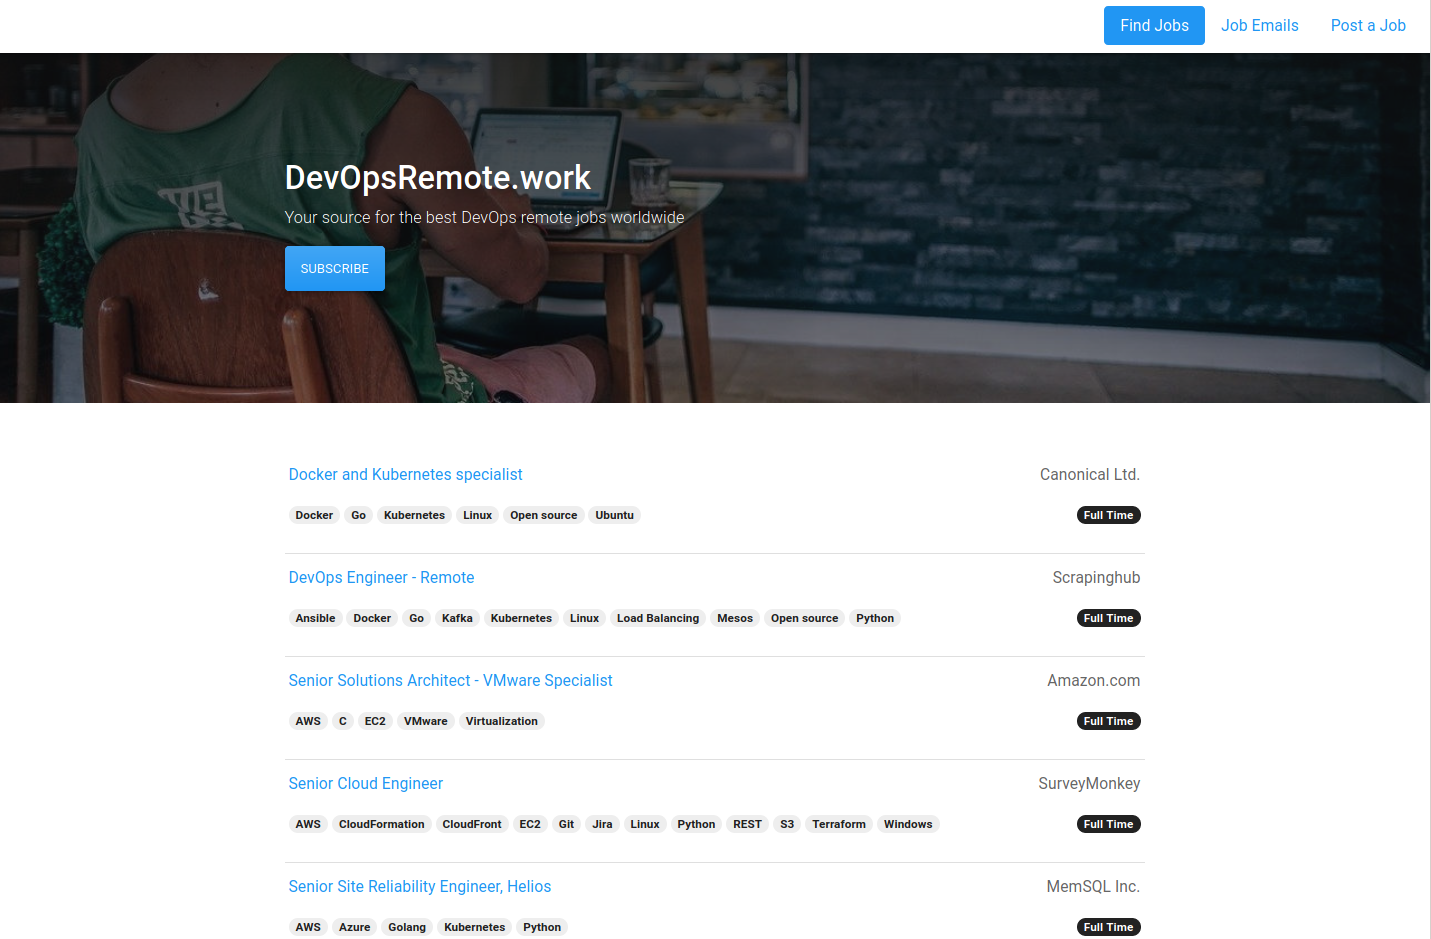 Find detailed information about DevOpsRemote.work